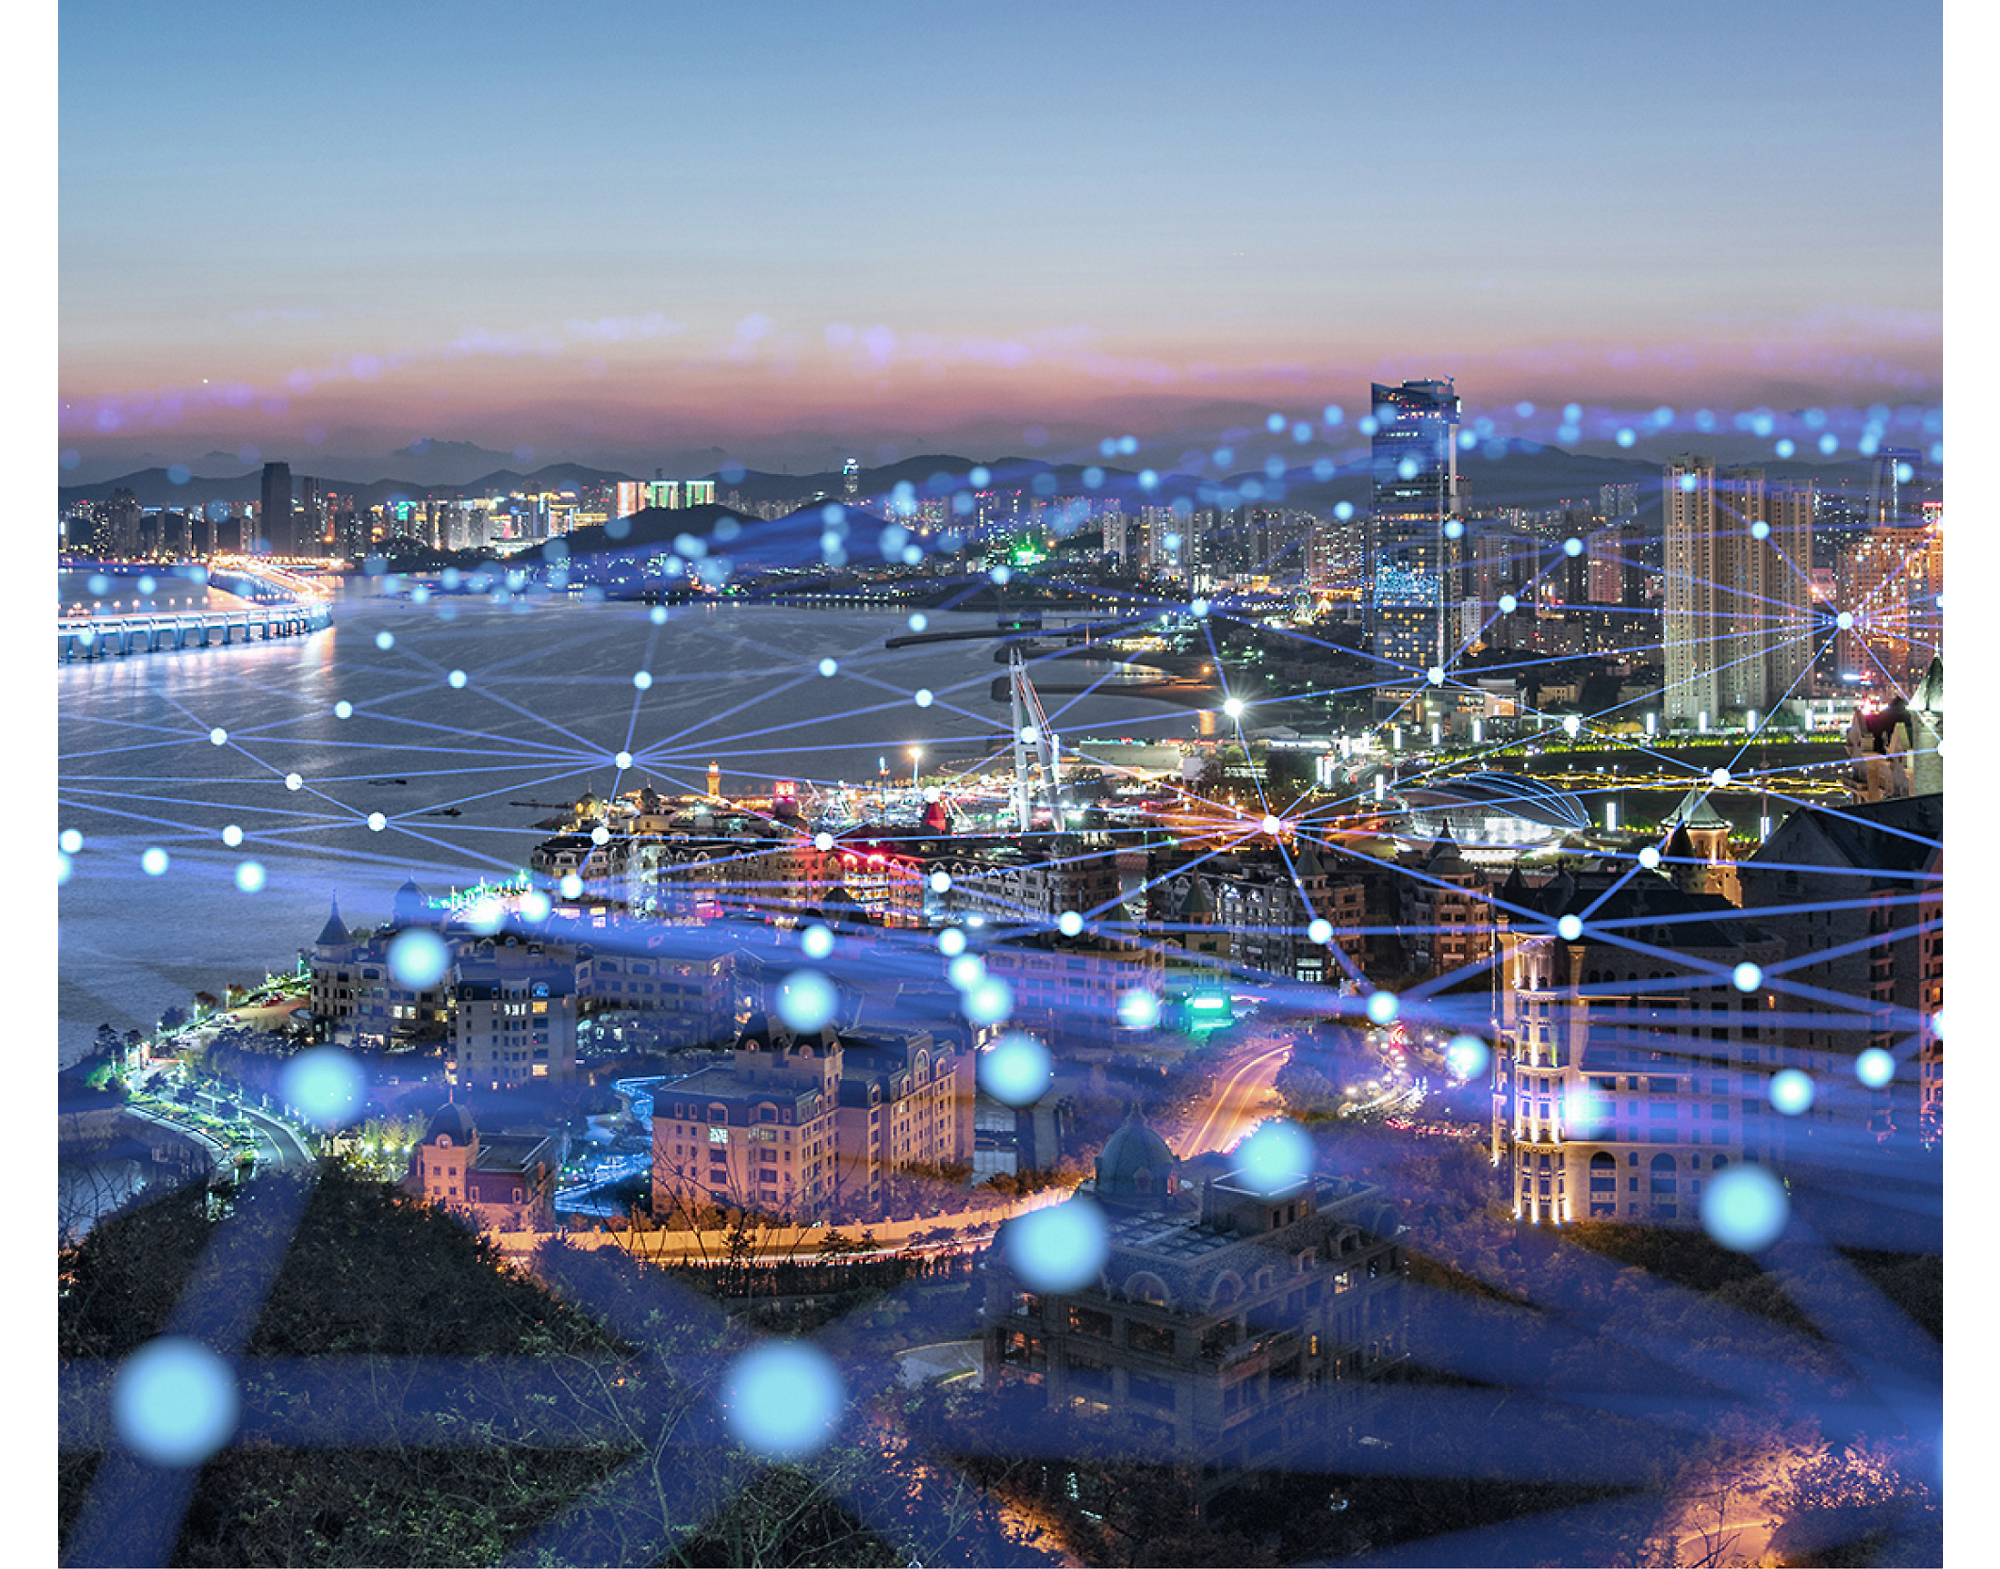 Pogled iz zraka na obalni grad u sumrak, prikazuje osvijetljene ulice i zgrade, prekrivene svjetlećom mrežom digitalne mreže.